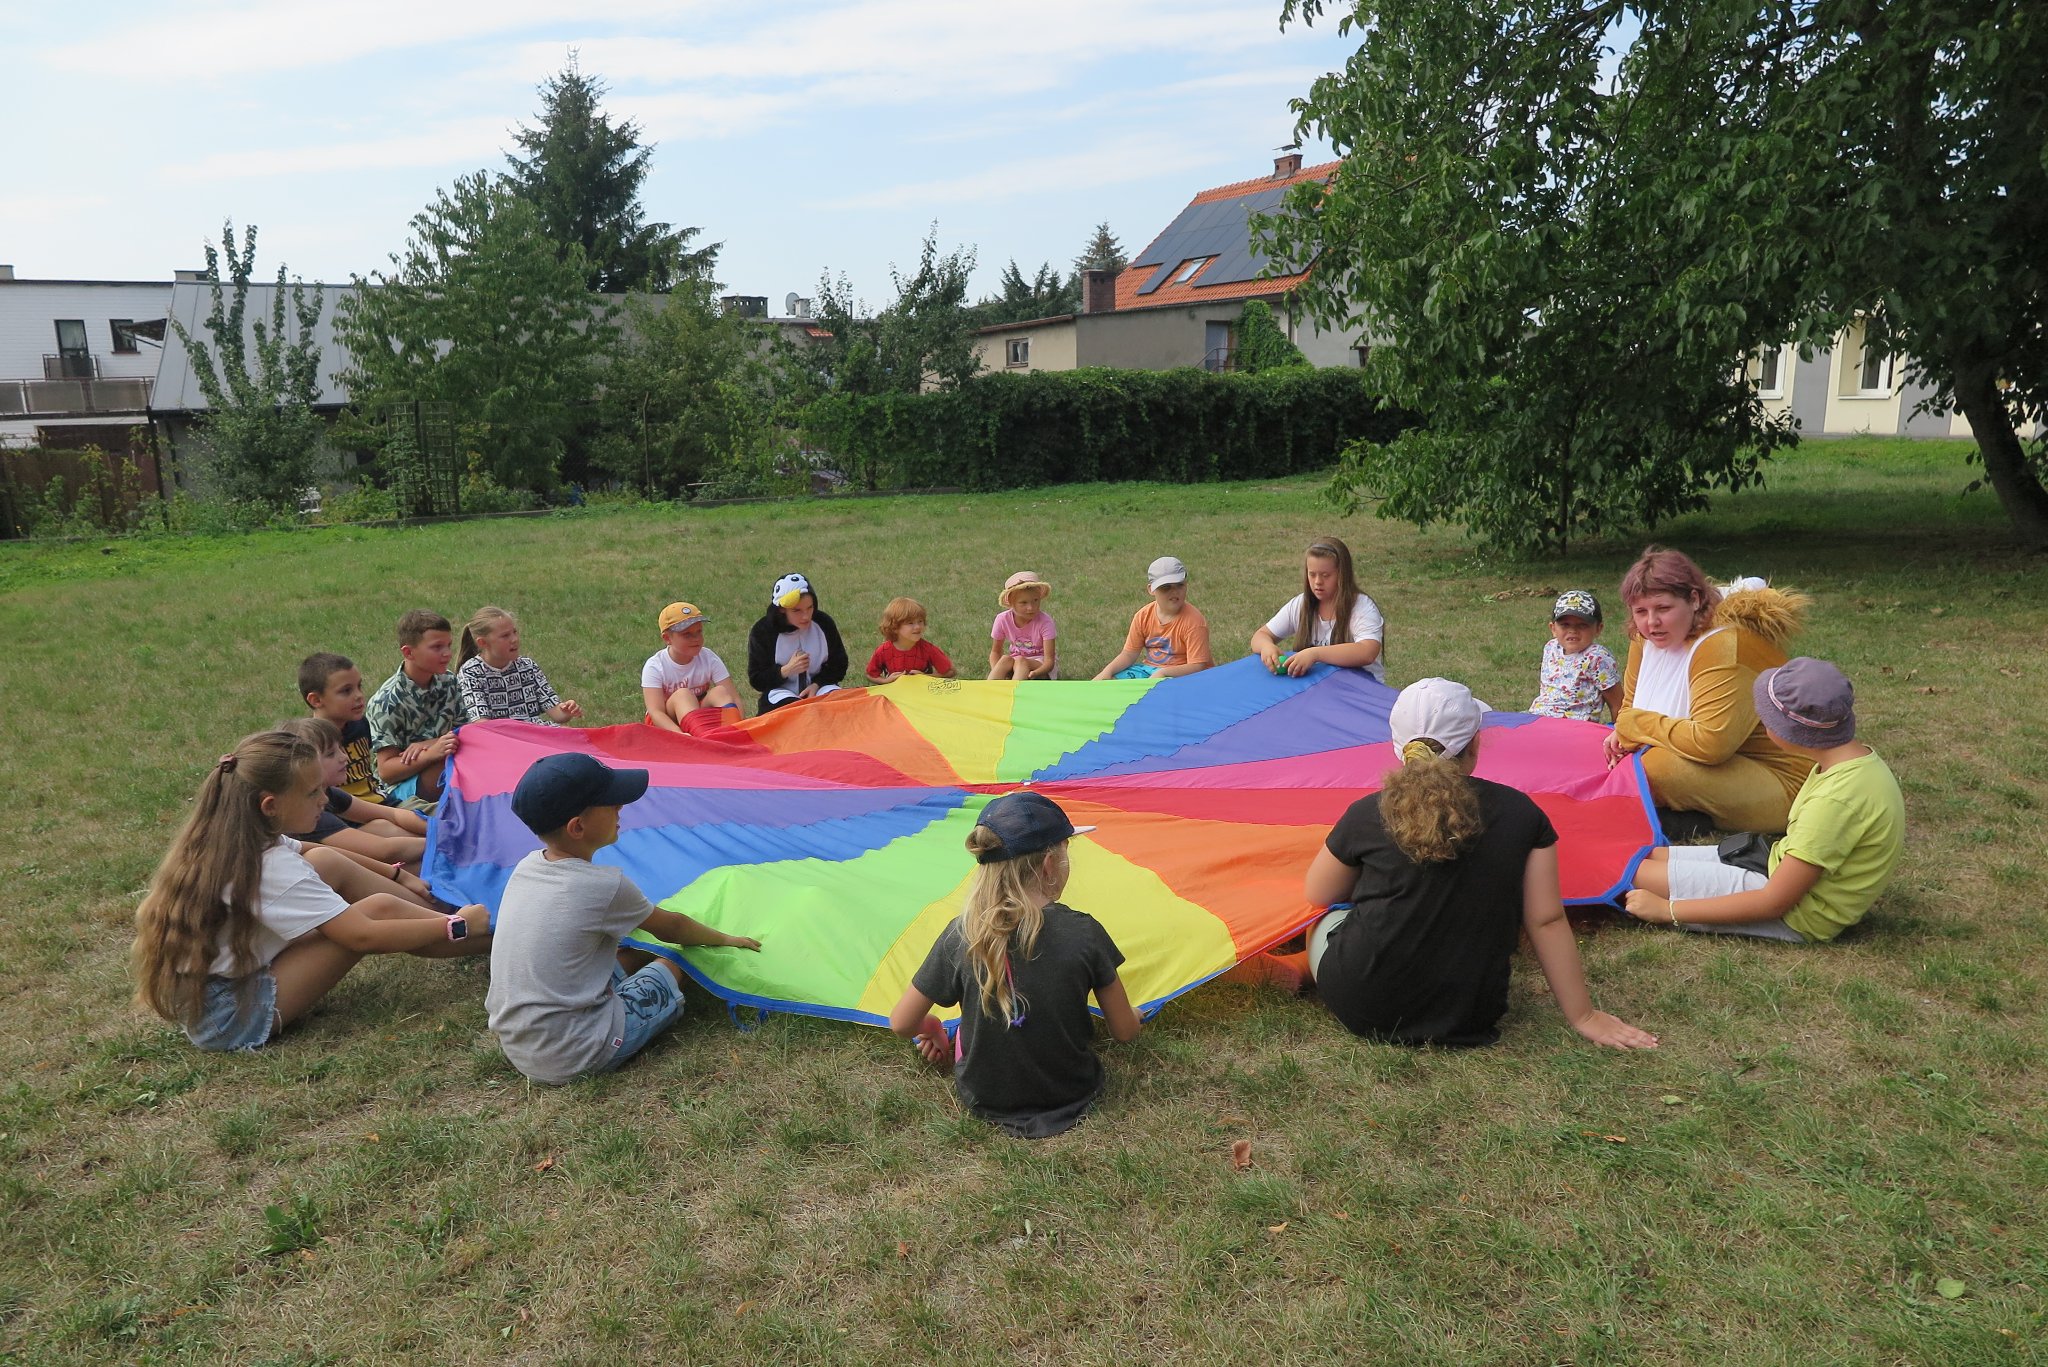 dzieci siedzą na trawie po okręgu, trzymają w rękach rozciągnięty "spadochron"